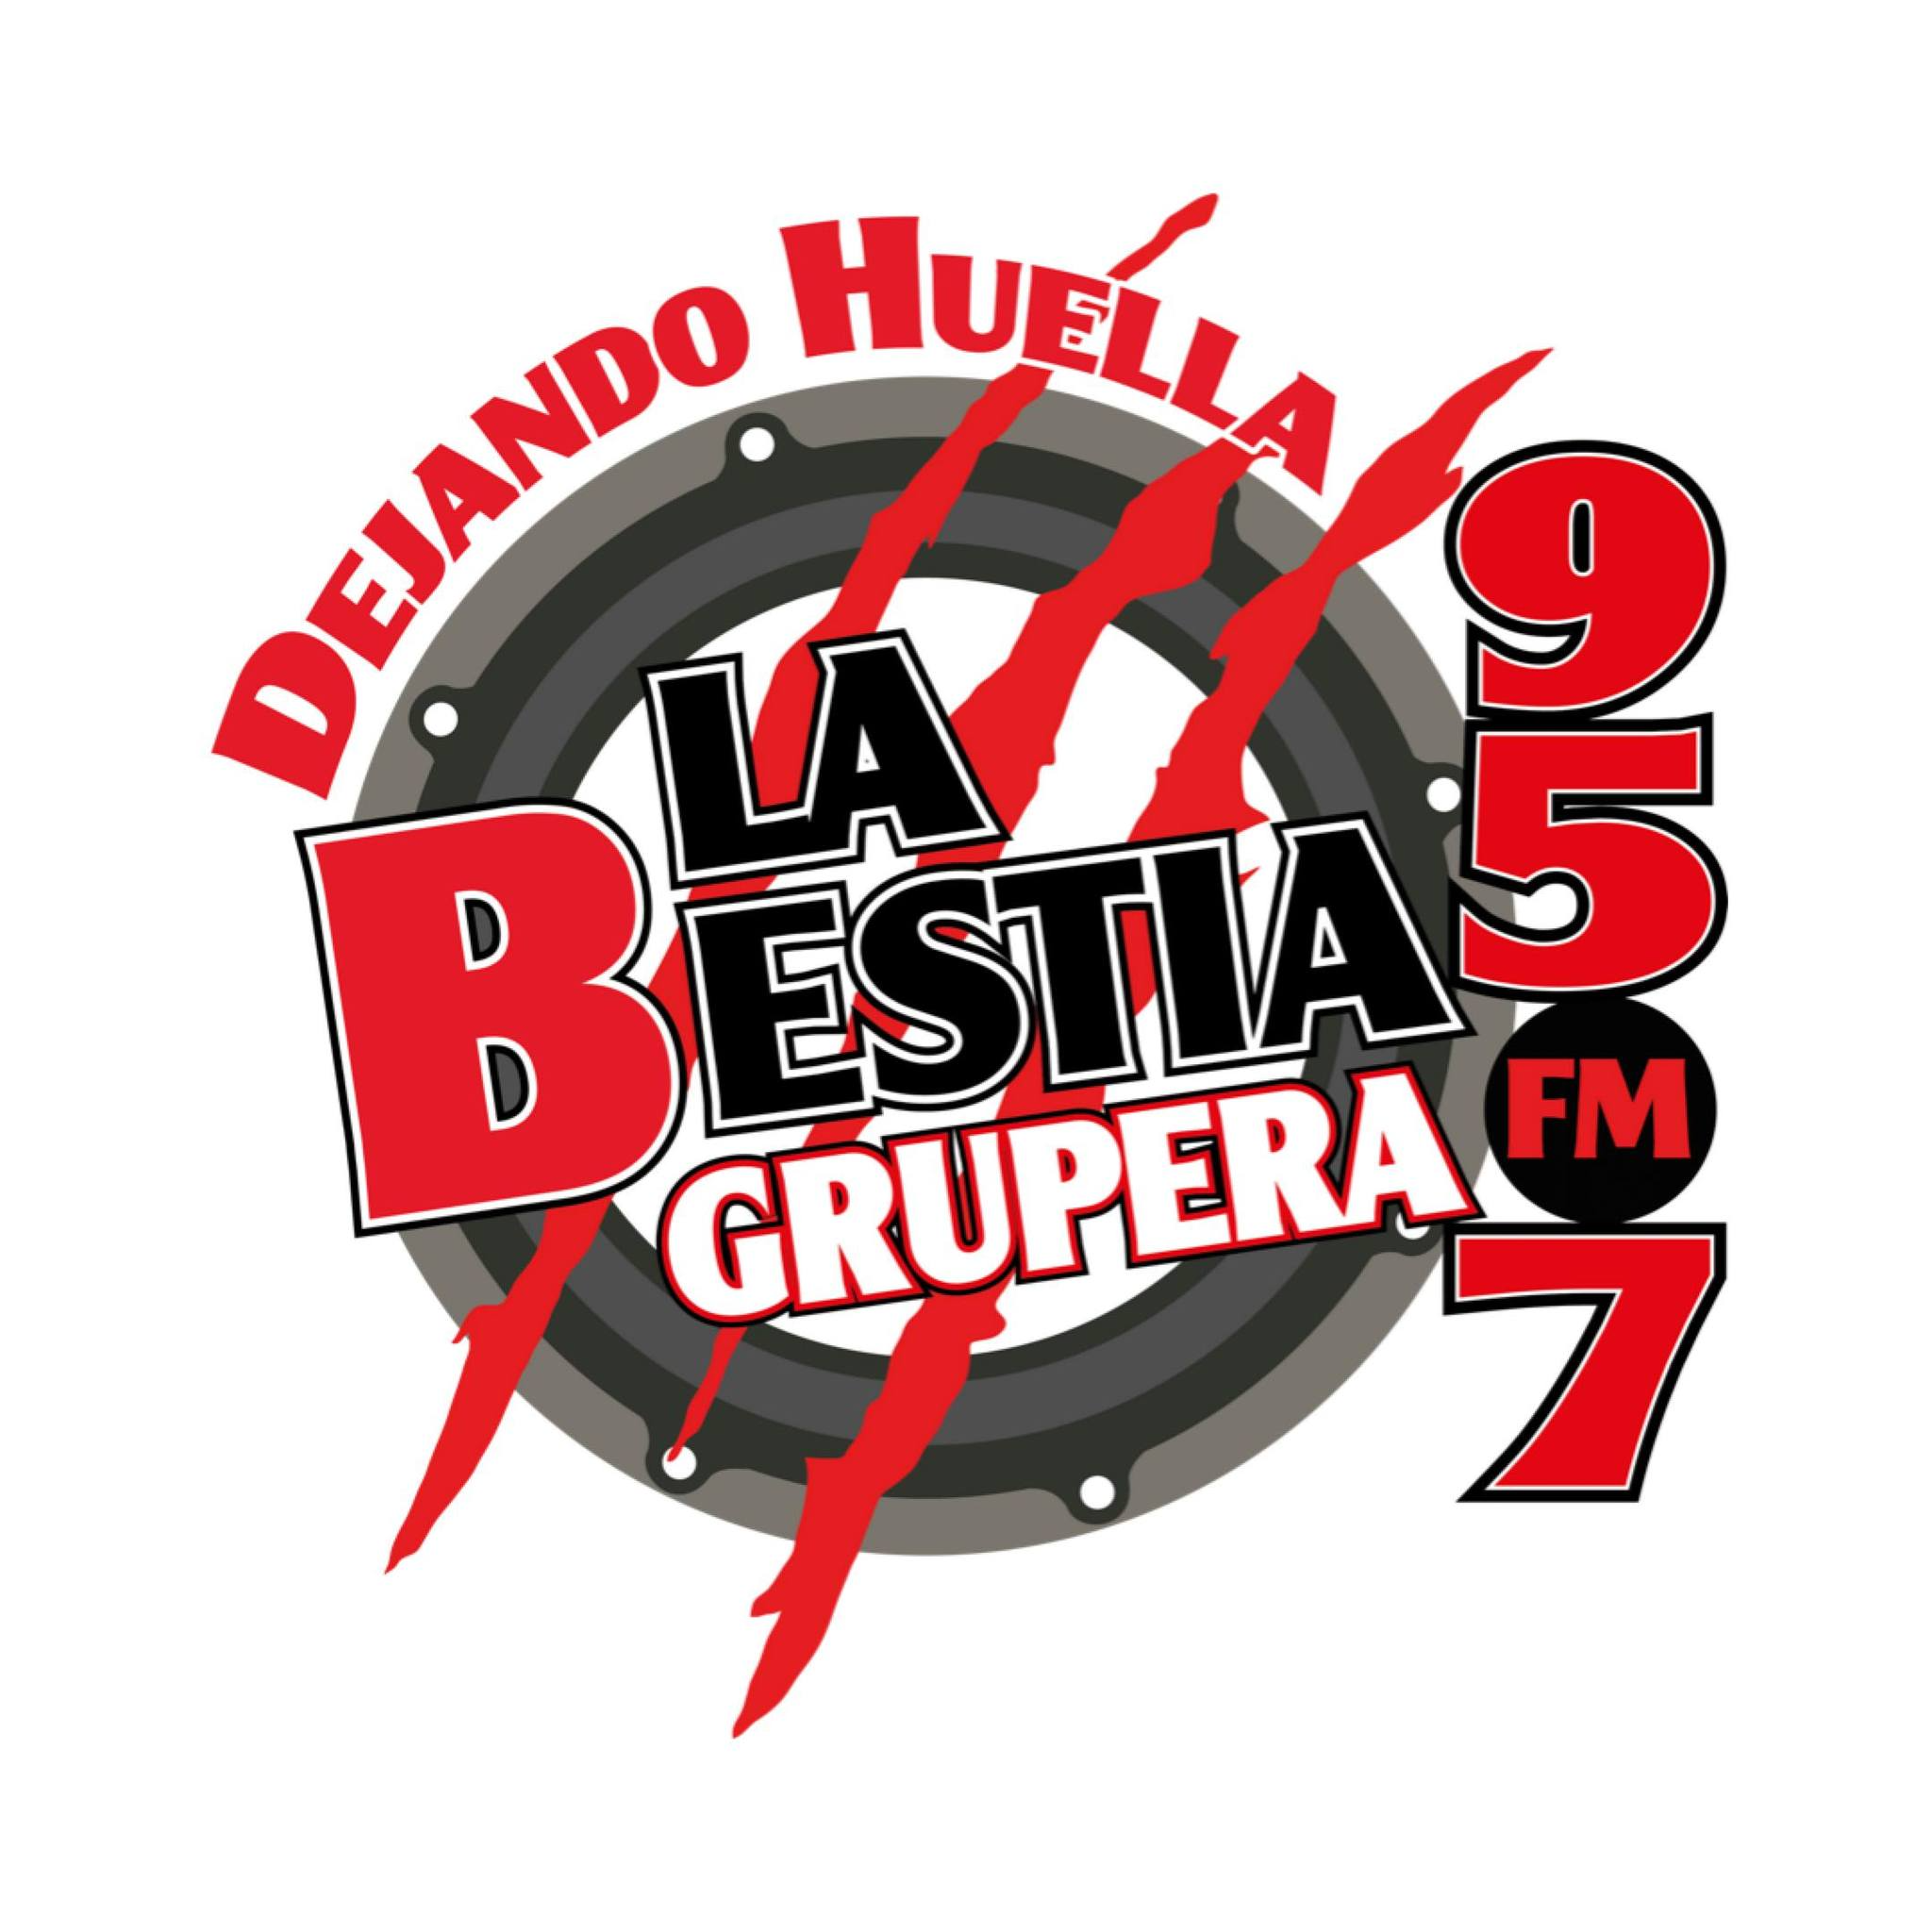 La Bestia Grupera 95.7 FM Cihuatlán